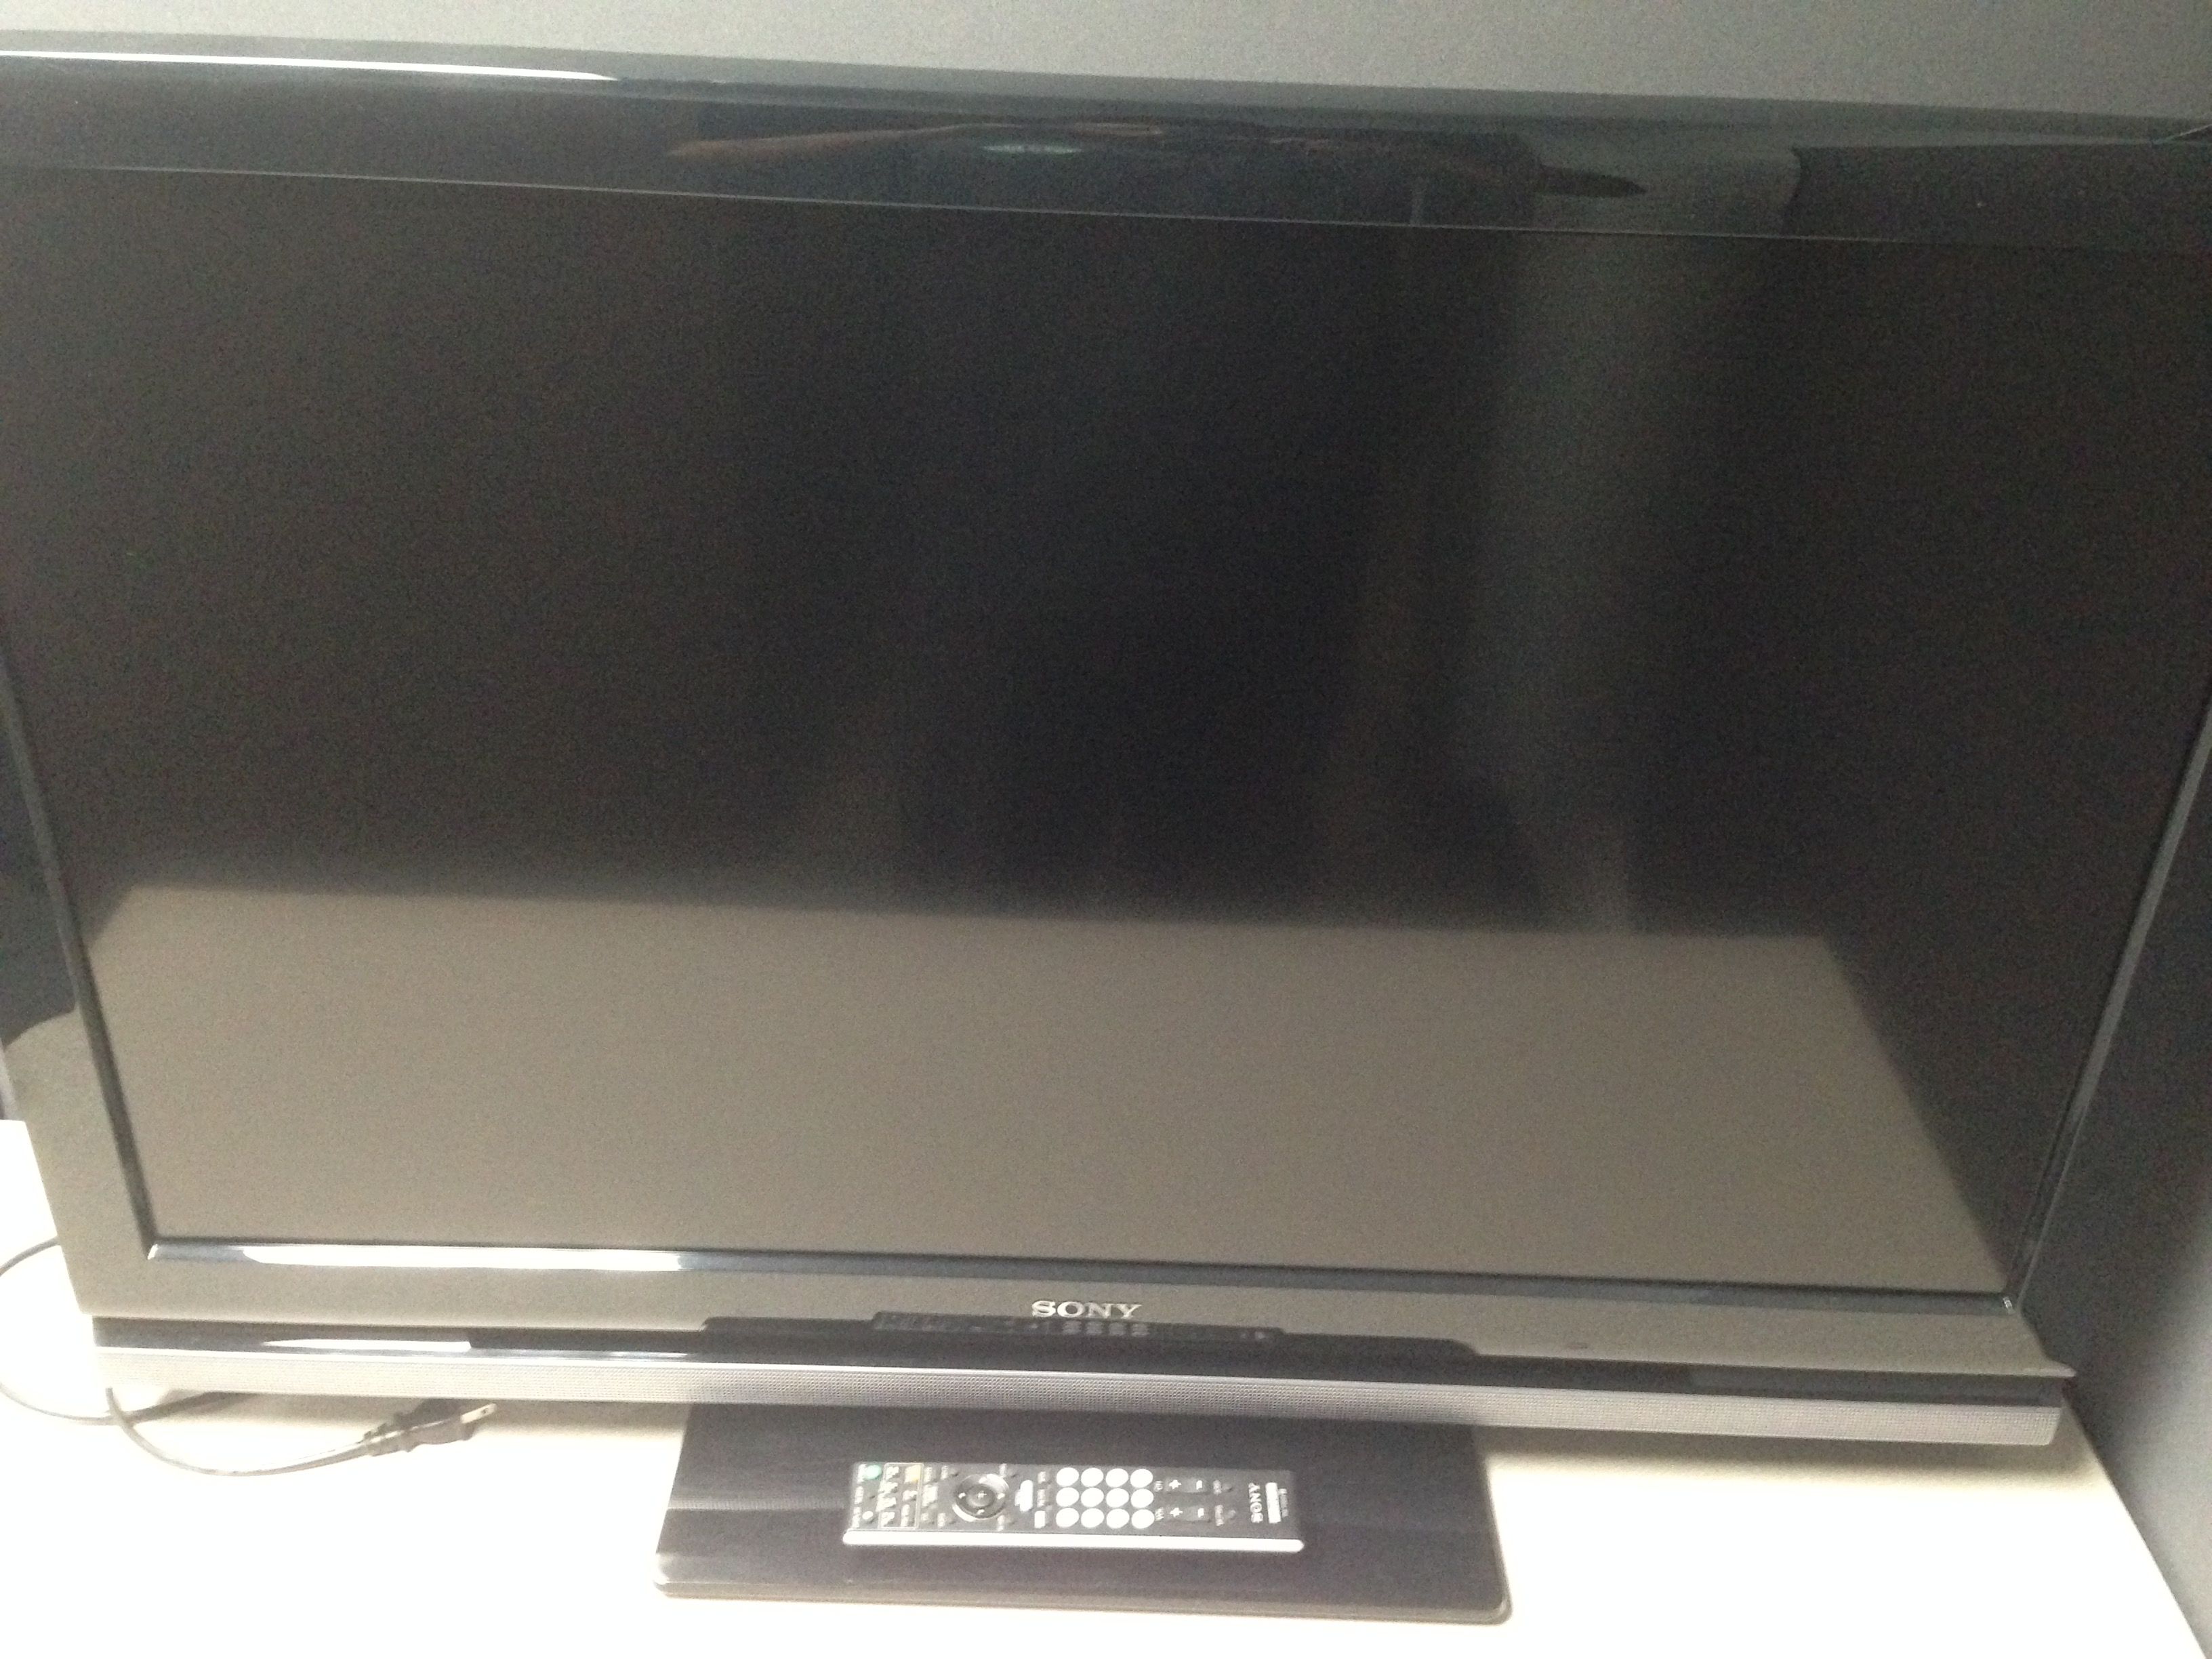 Sony Bravia 40" 1080p HD LCD TV KDL-40V4100